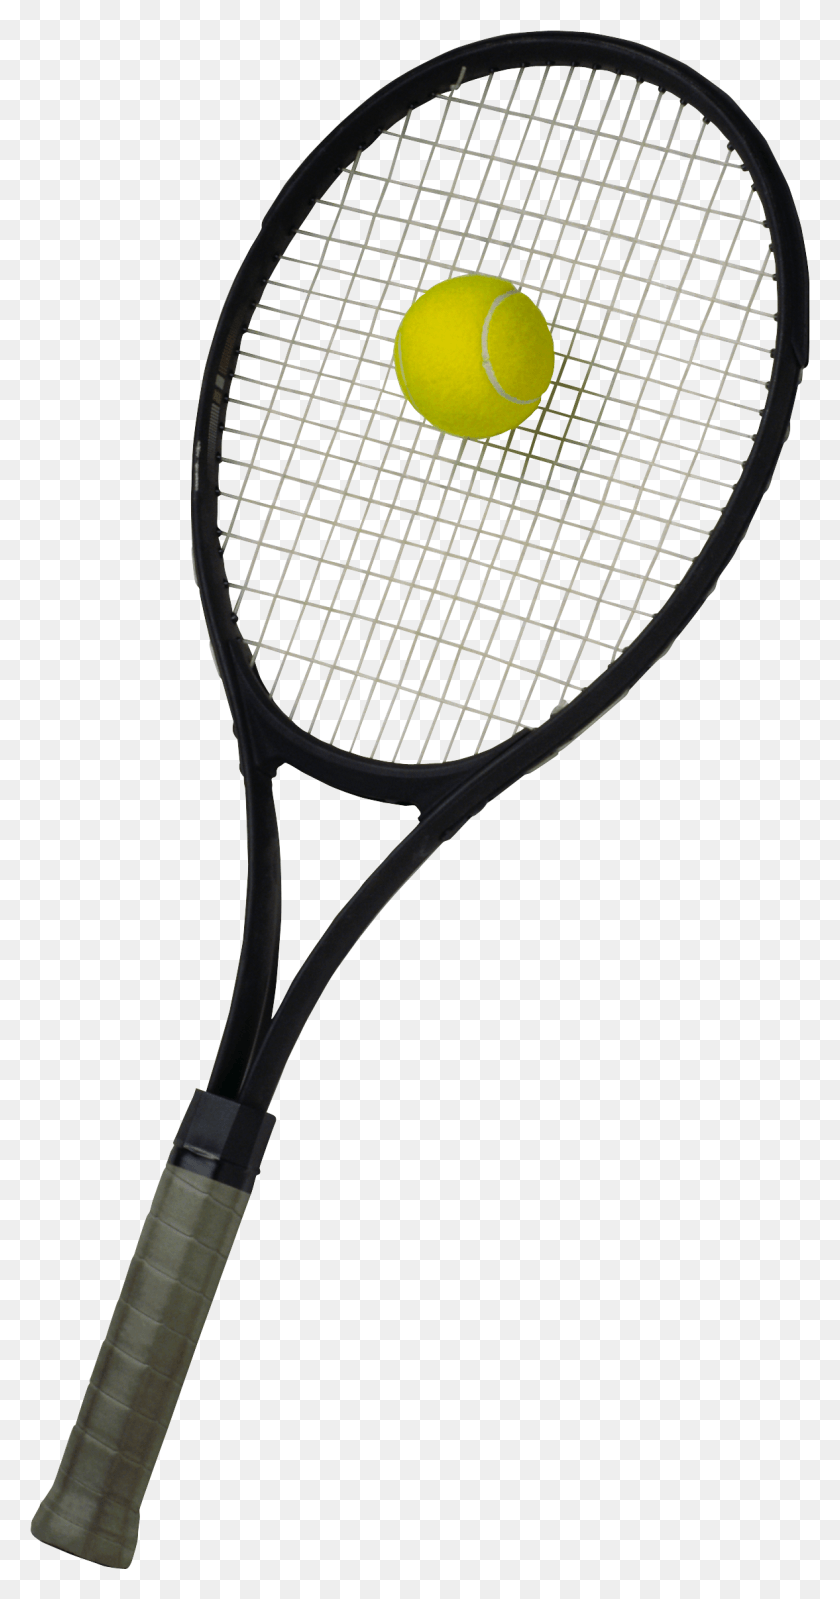 1177x2323 Теннисная Ракетка Изображение Теннисной Ракетки Прозрачный Фон, Теннисный Мяч, Теннис, Мяч Png Скачать